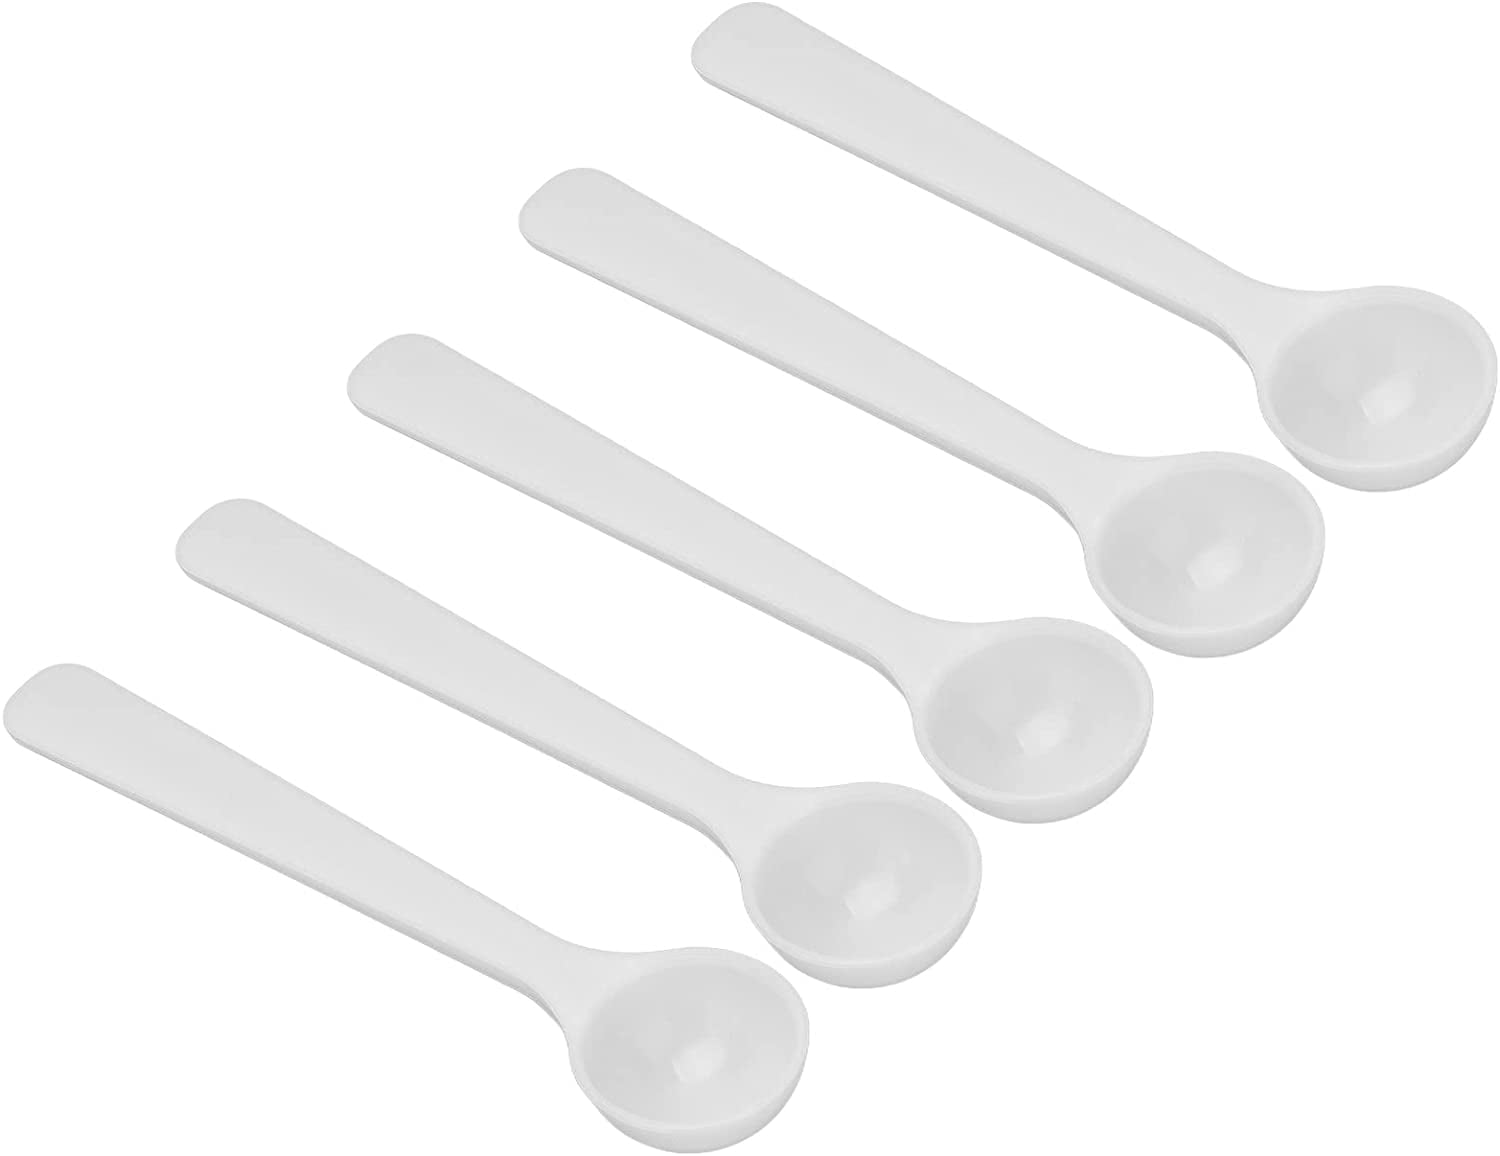 What is 1g Measuring Scoop 2ml Plastic Scoop 1 Gram Measuring Spoon